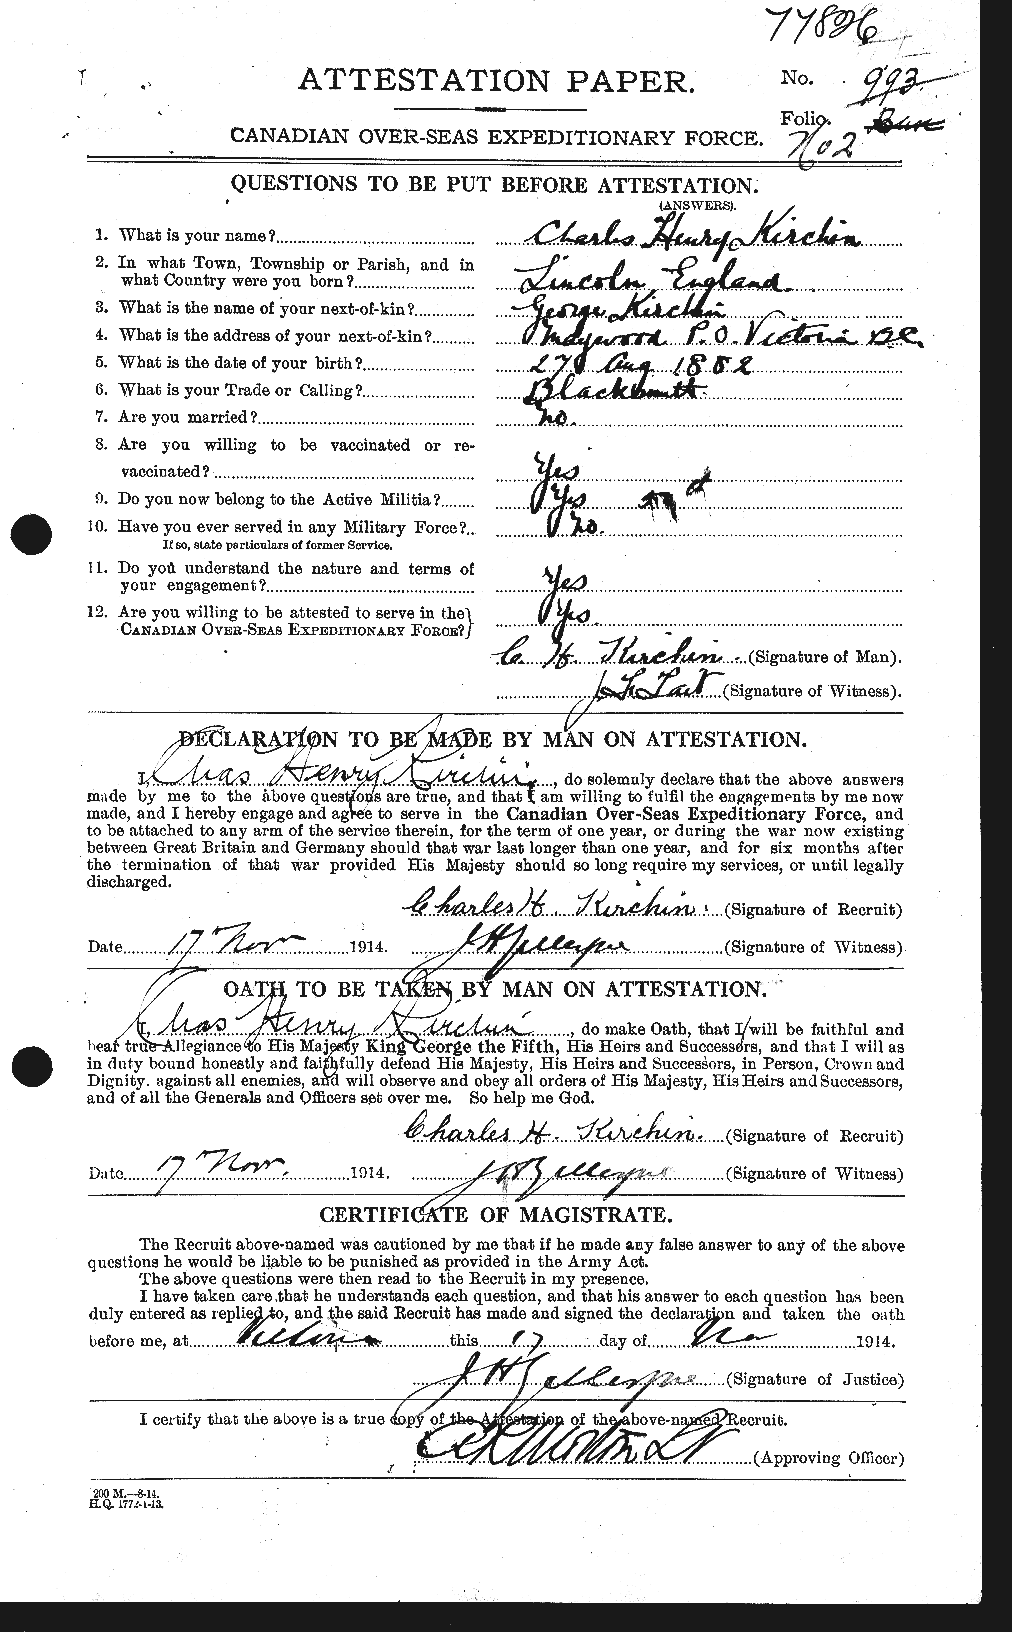 Dossiers du Personnel de la Première Guerre mondiale - CEC 437314a